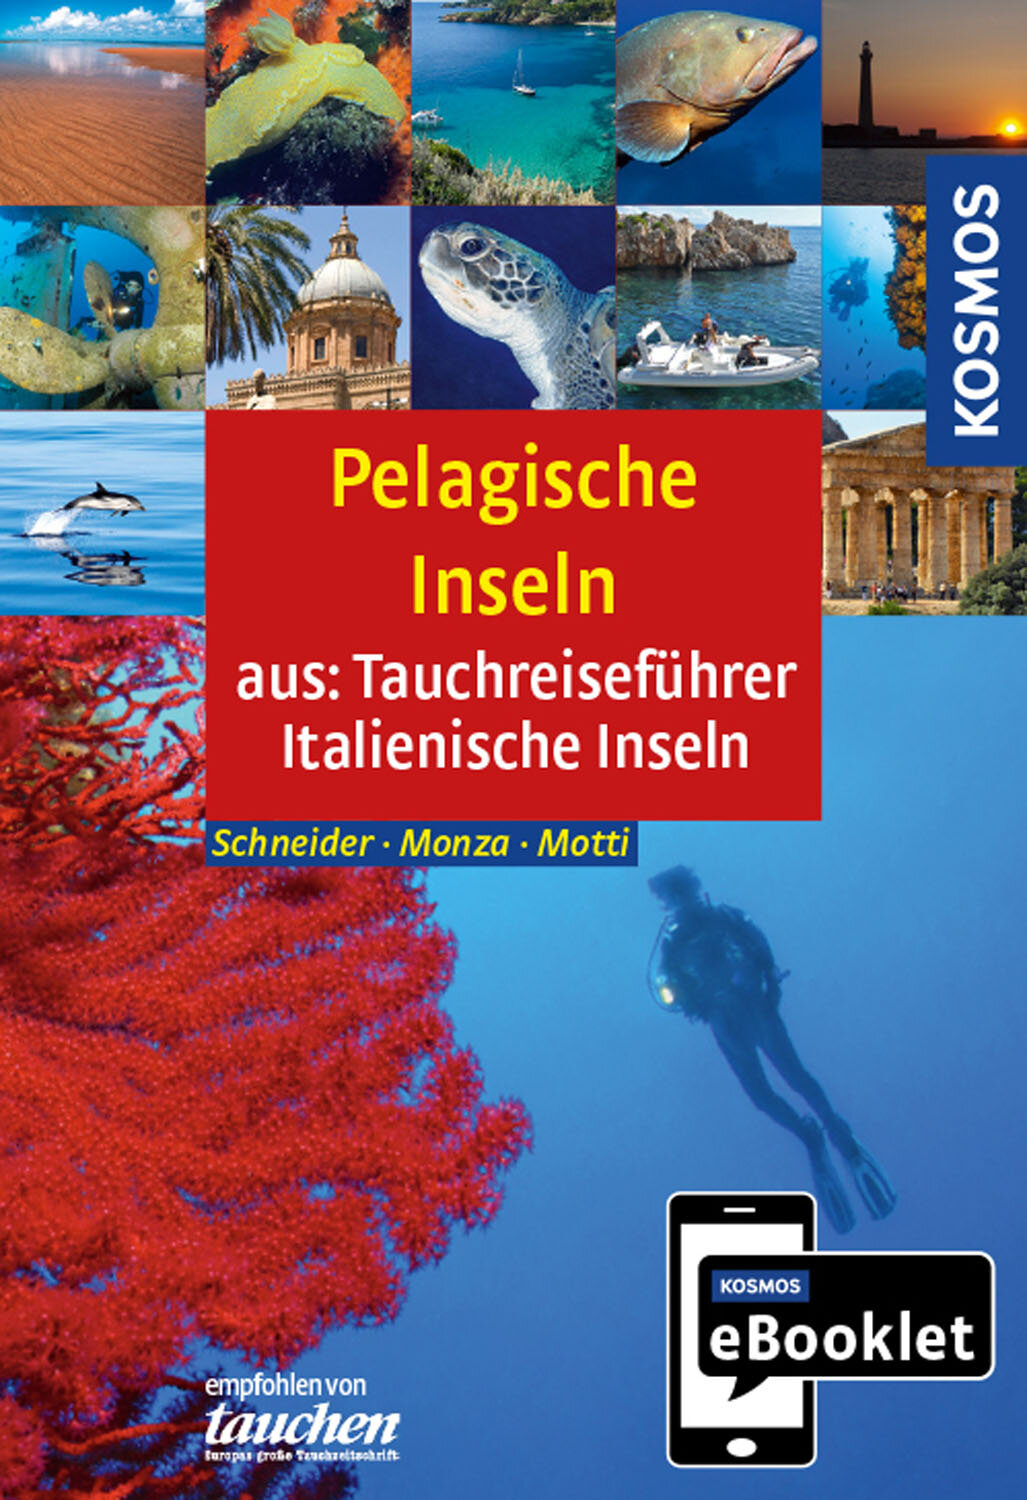 KOSMOS eBooklet: Tauchreiseführer Pelagische Inseln